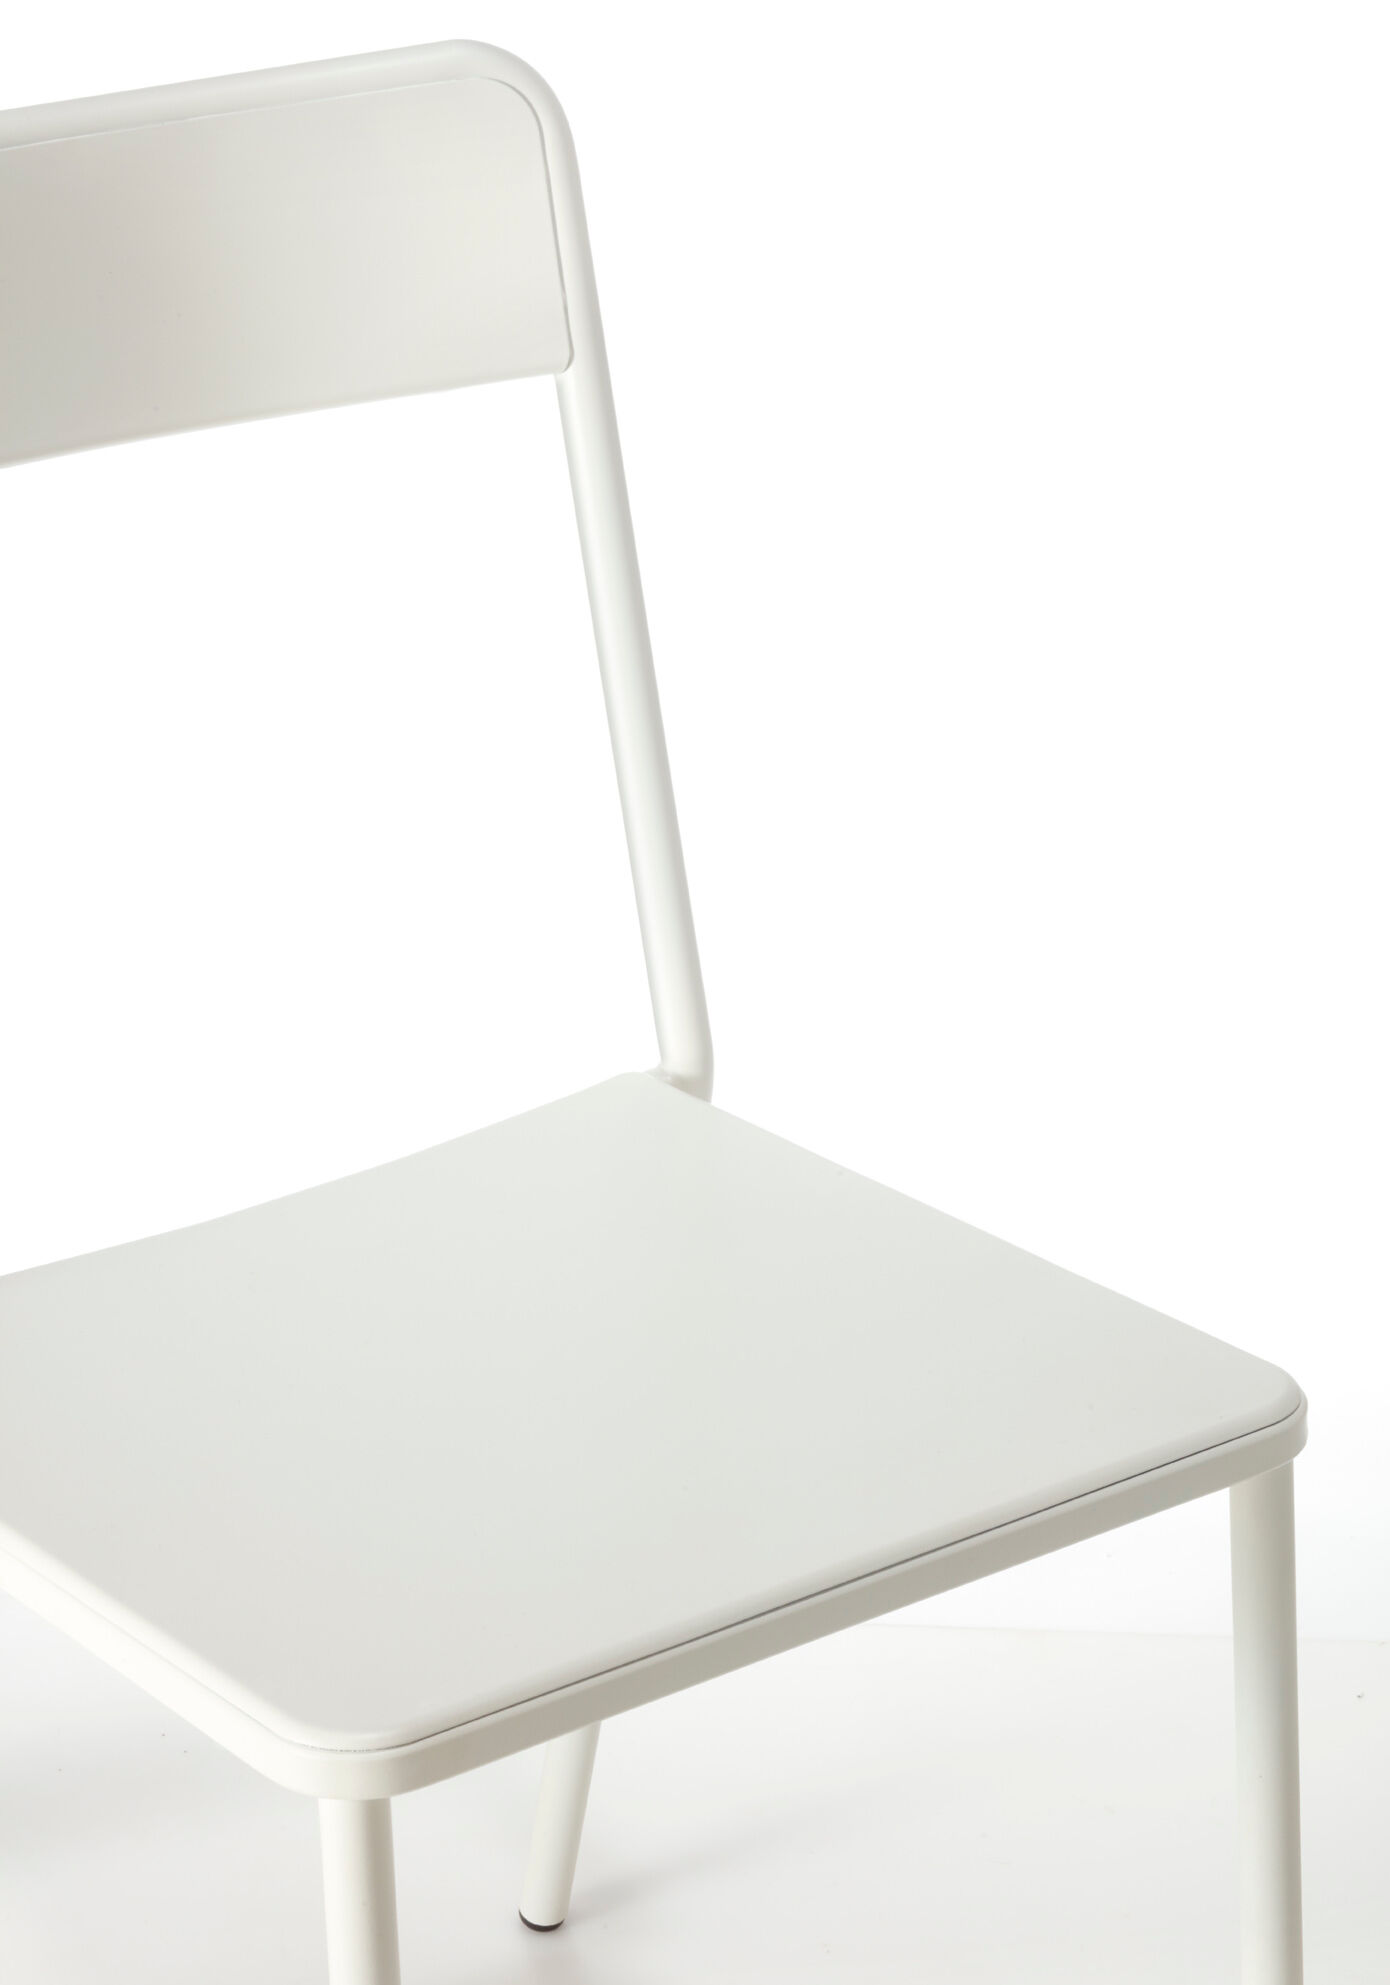 CH C Chair White detail